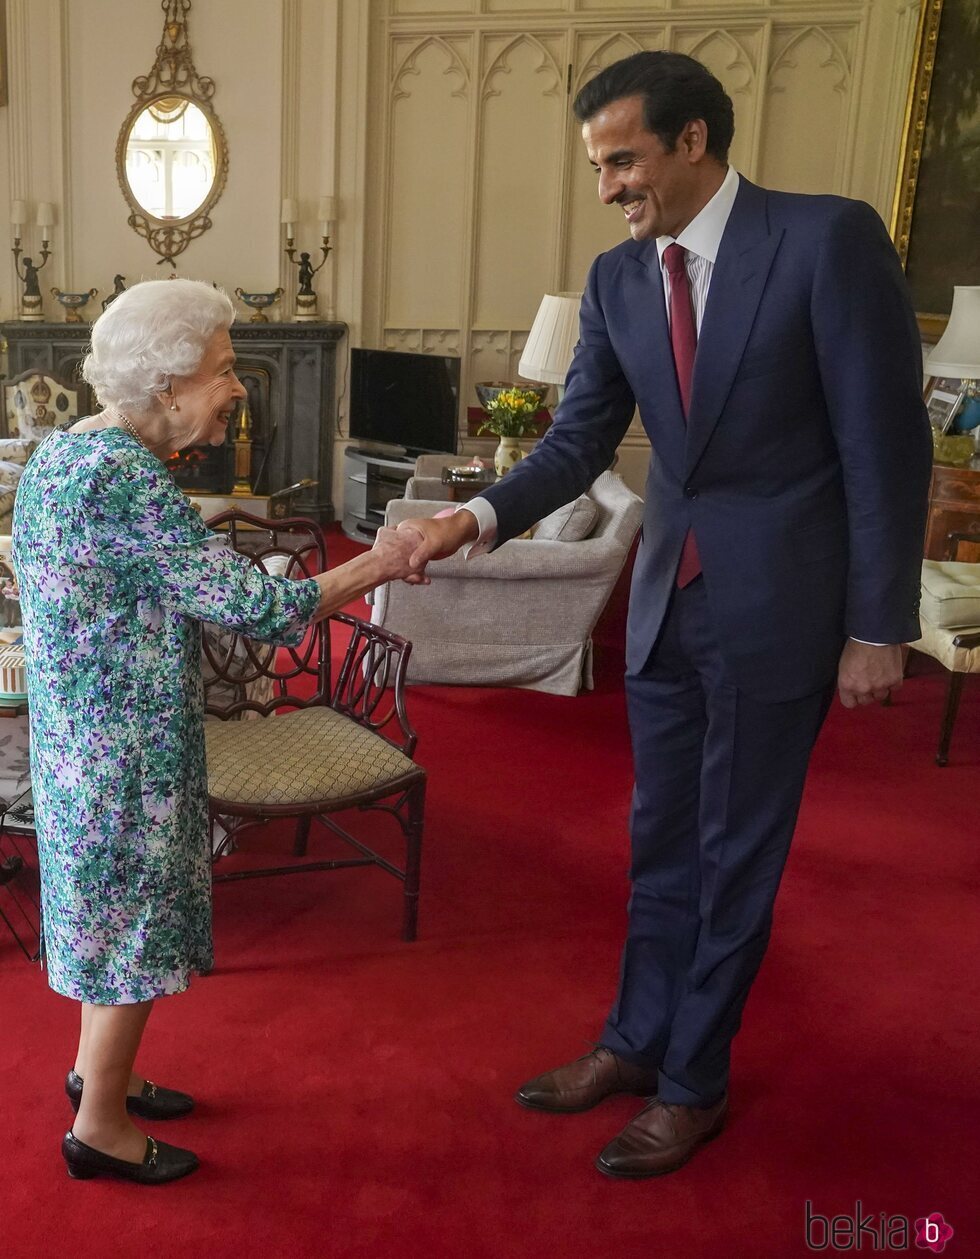 La Reina Isabel saludando al Emir de Catar en Windsor Castle